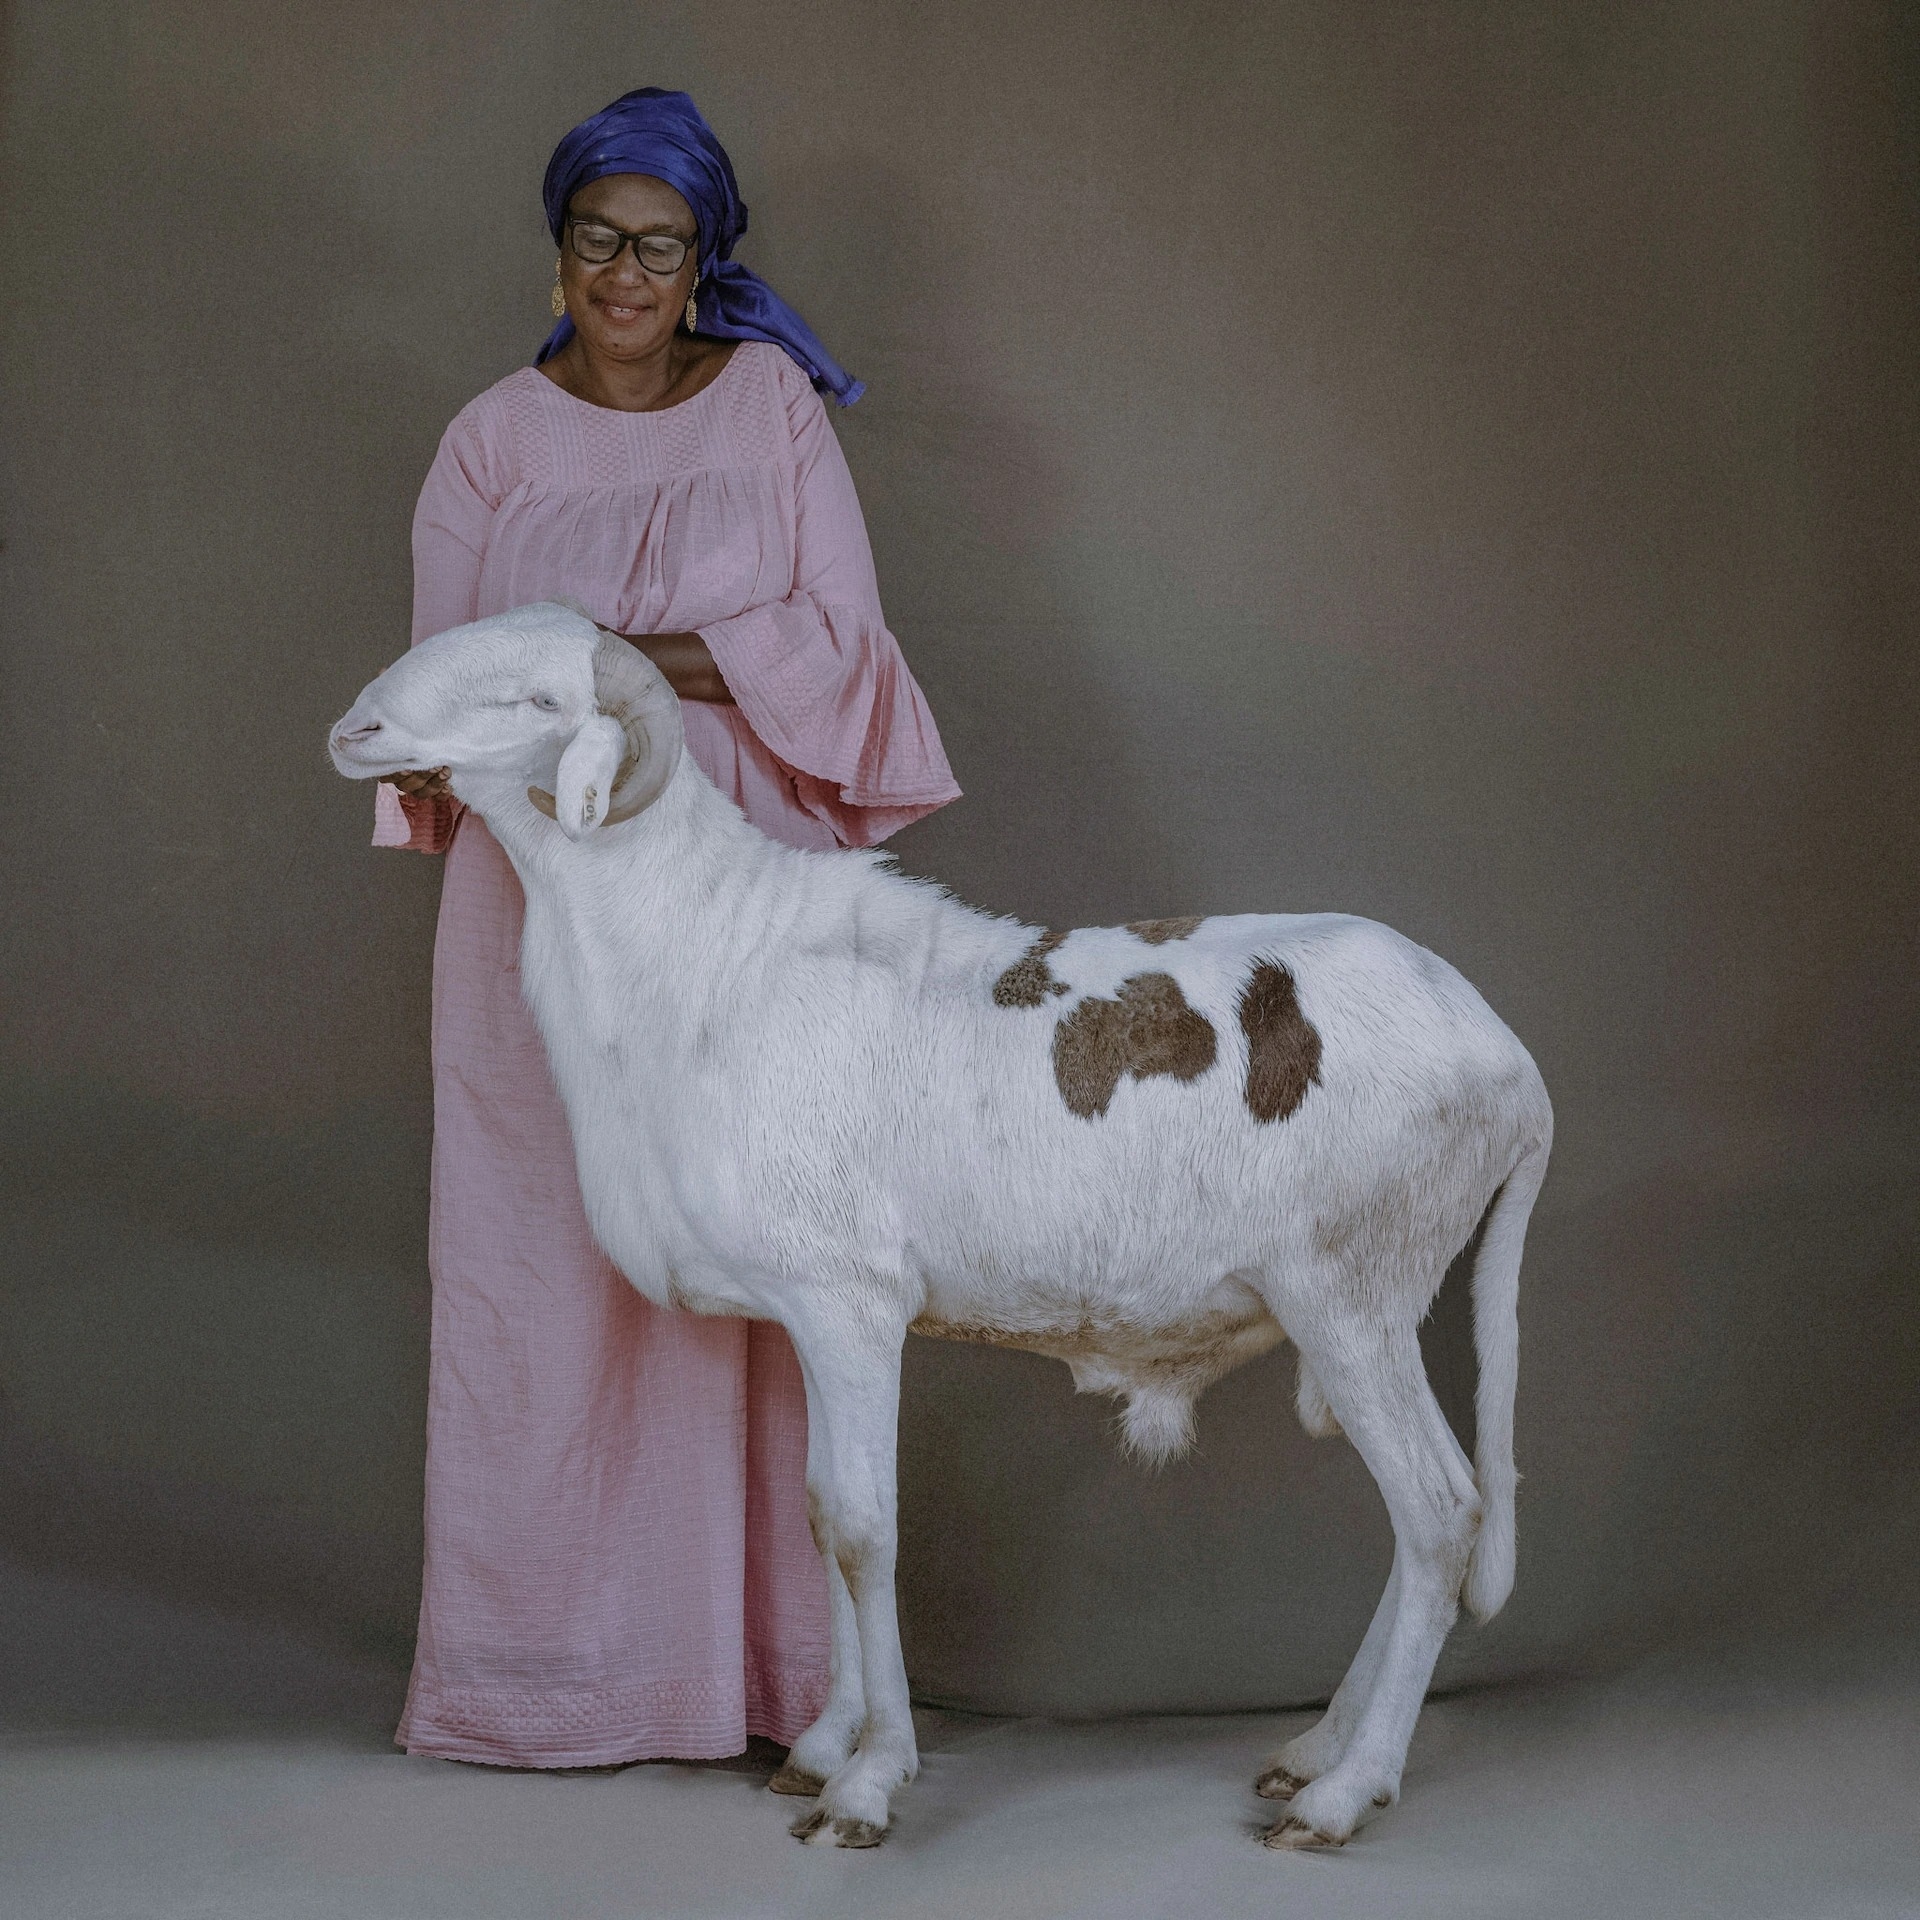 娑．法圖瑪塔．卡（Sow Fatoumata Ka）夫人和兩歲的拉多姆公羊阿瑪斯（Amath）。這種羊和其他綿羊不一樣，穆斯林的開齋節盛宴通常不會宰殺這種羊，因為牠們很珍貴，也備受大眾喜愛。